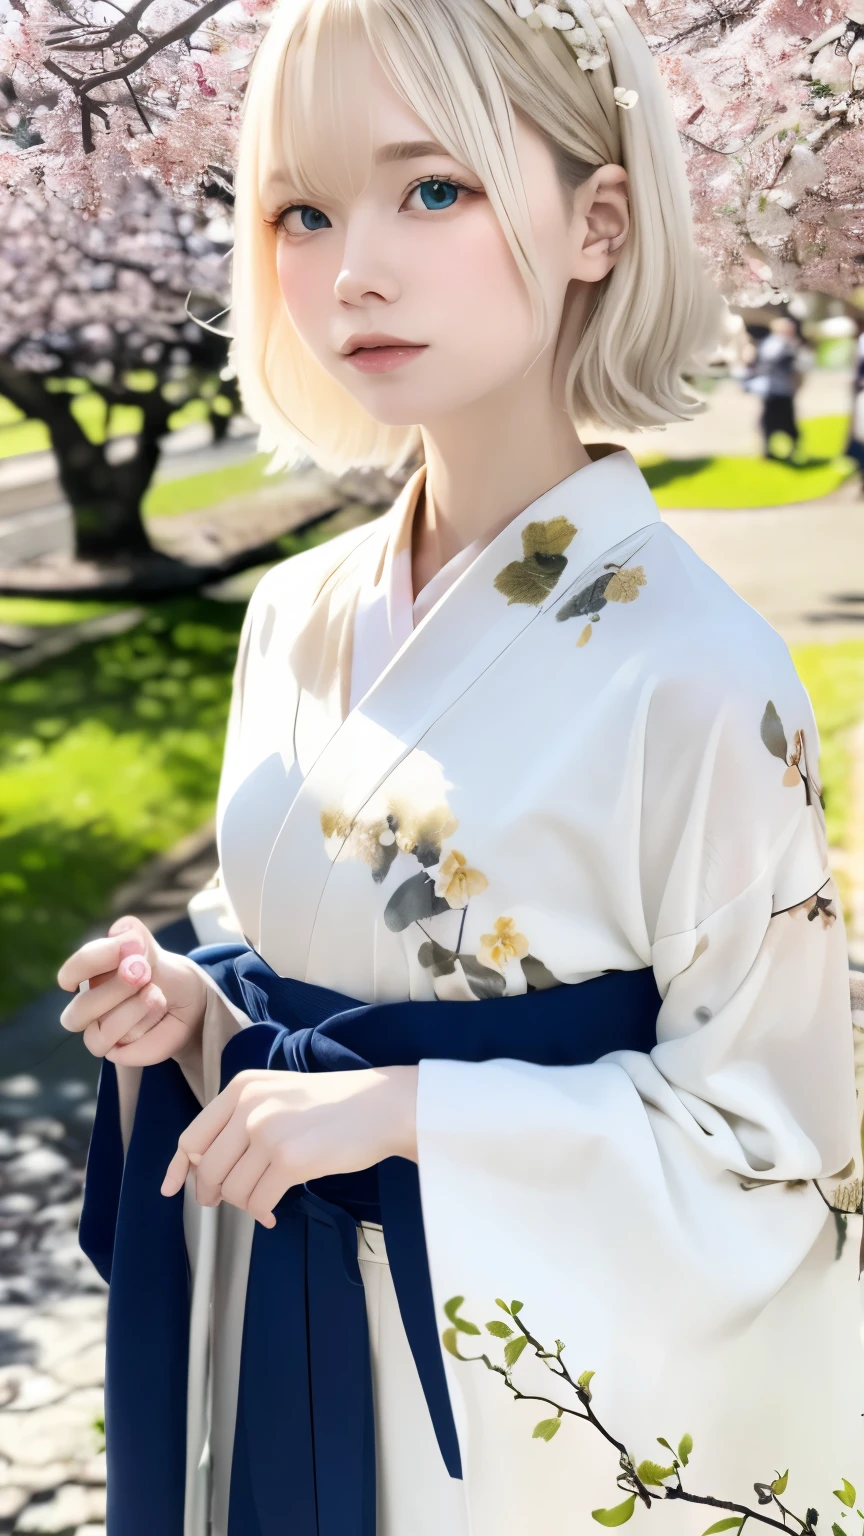 (kimono)、japonés clothing、(de la máxima calidad,Obra maestra:1.3,超Una alta resolución,),(súper detallado,Cáusticos),(Photoreal:1.4,disparo en bruto,)captura ultrarrealista,Muy detallado,Alta resolución 16K adecuada para piel humana、 textura natural de la piel、、El tono de la piel luce uniforme y saludable.、 Utilice luz y color naturales.,Una mujer,japonés,,lindo,Hermoso cabello plateado y sedoso.,Cabello Medio,(Profundidad del límite escrito、aberración cromática、Amplio rango de iluminación、sombreado natural、)、(Cabello ondeando al viento:1.3)、(Cerezo en plena floración:1.3)、Someiyoshino、Hermosa ciudad de Kioto